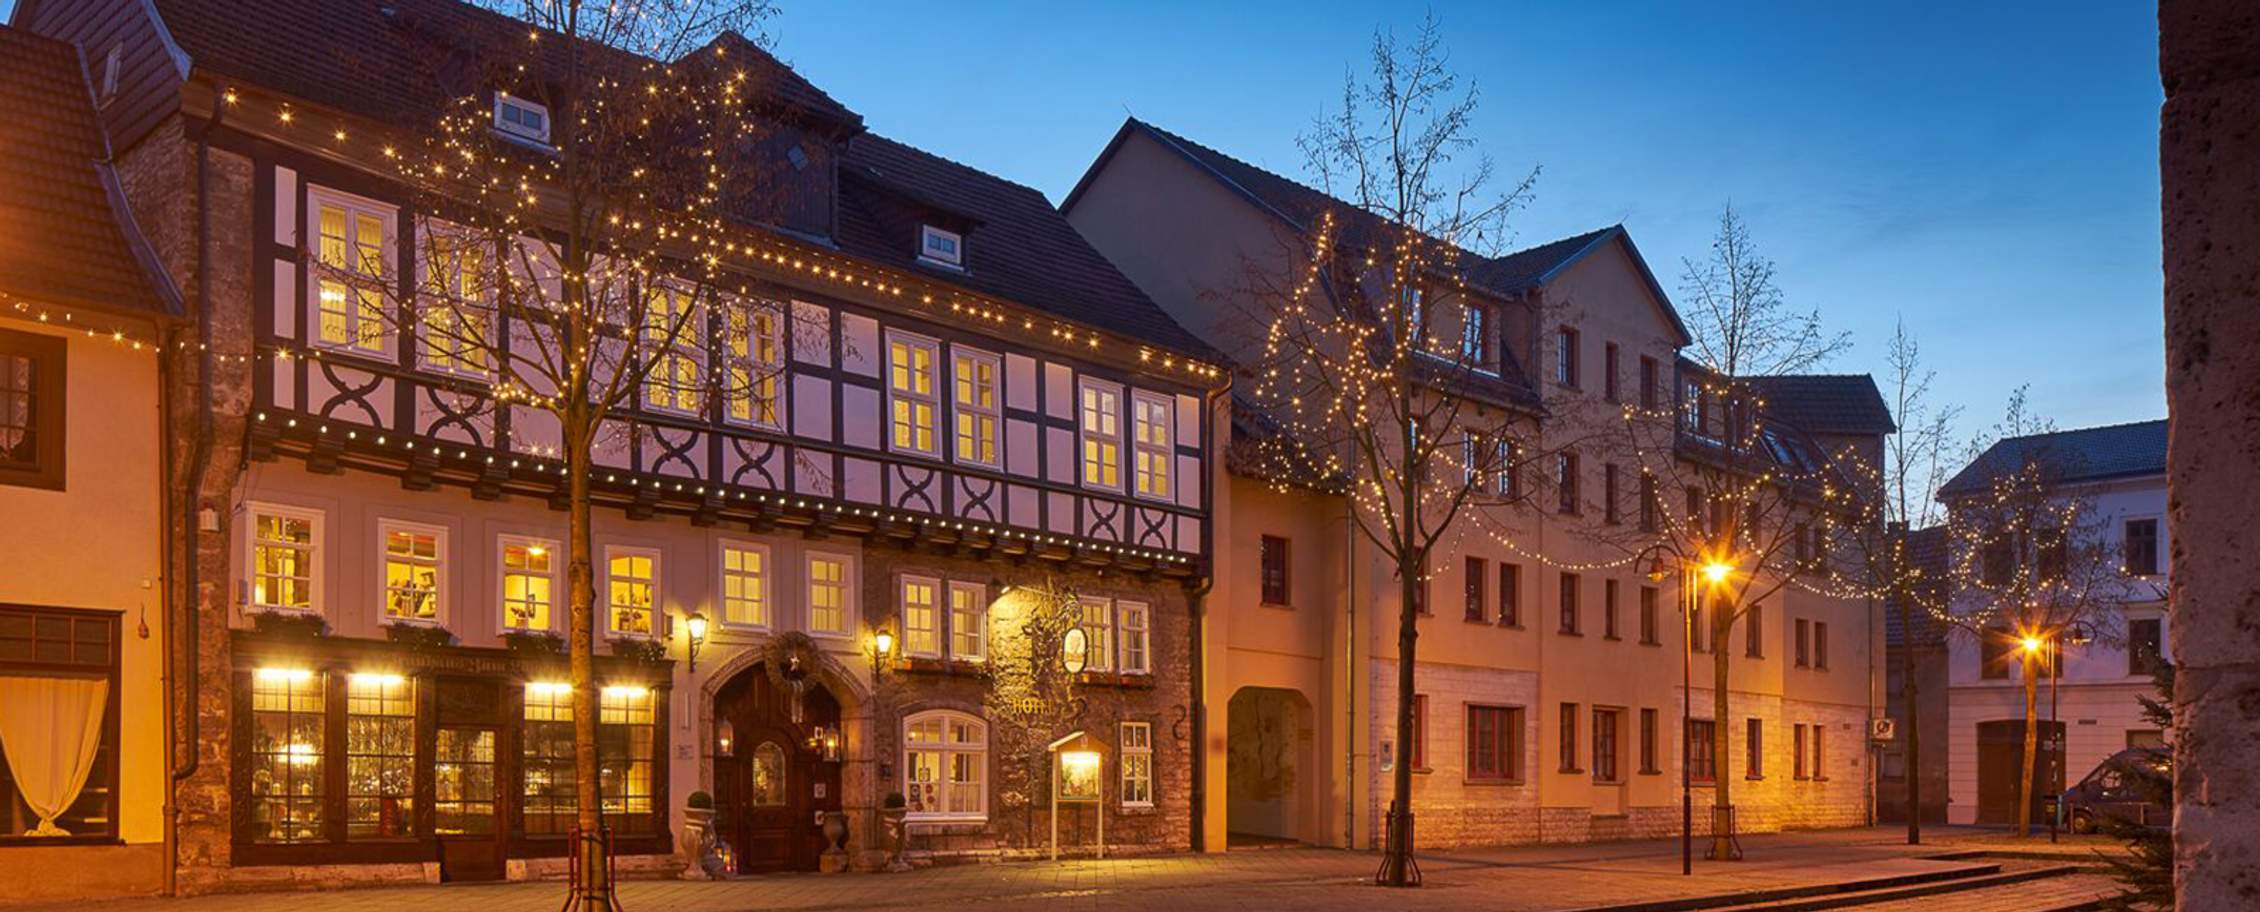 Göbel’s Hotel Brauhaus zum Löwen – Mühlhausen / Thüringen